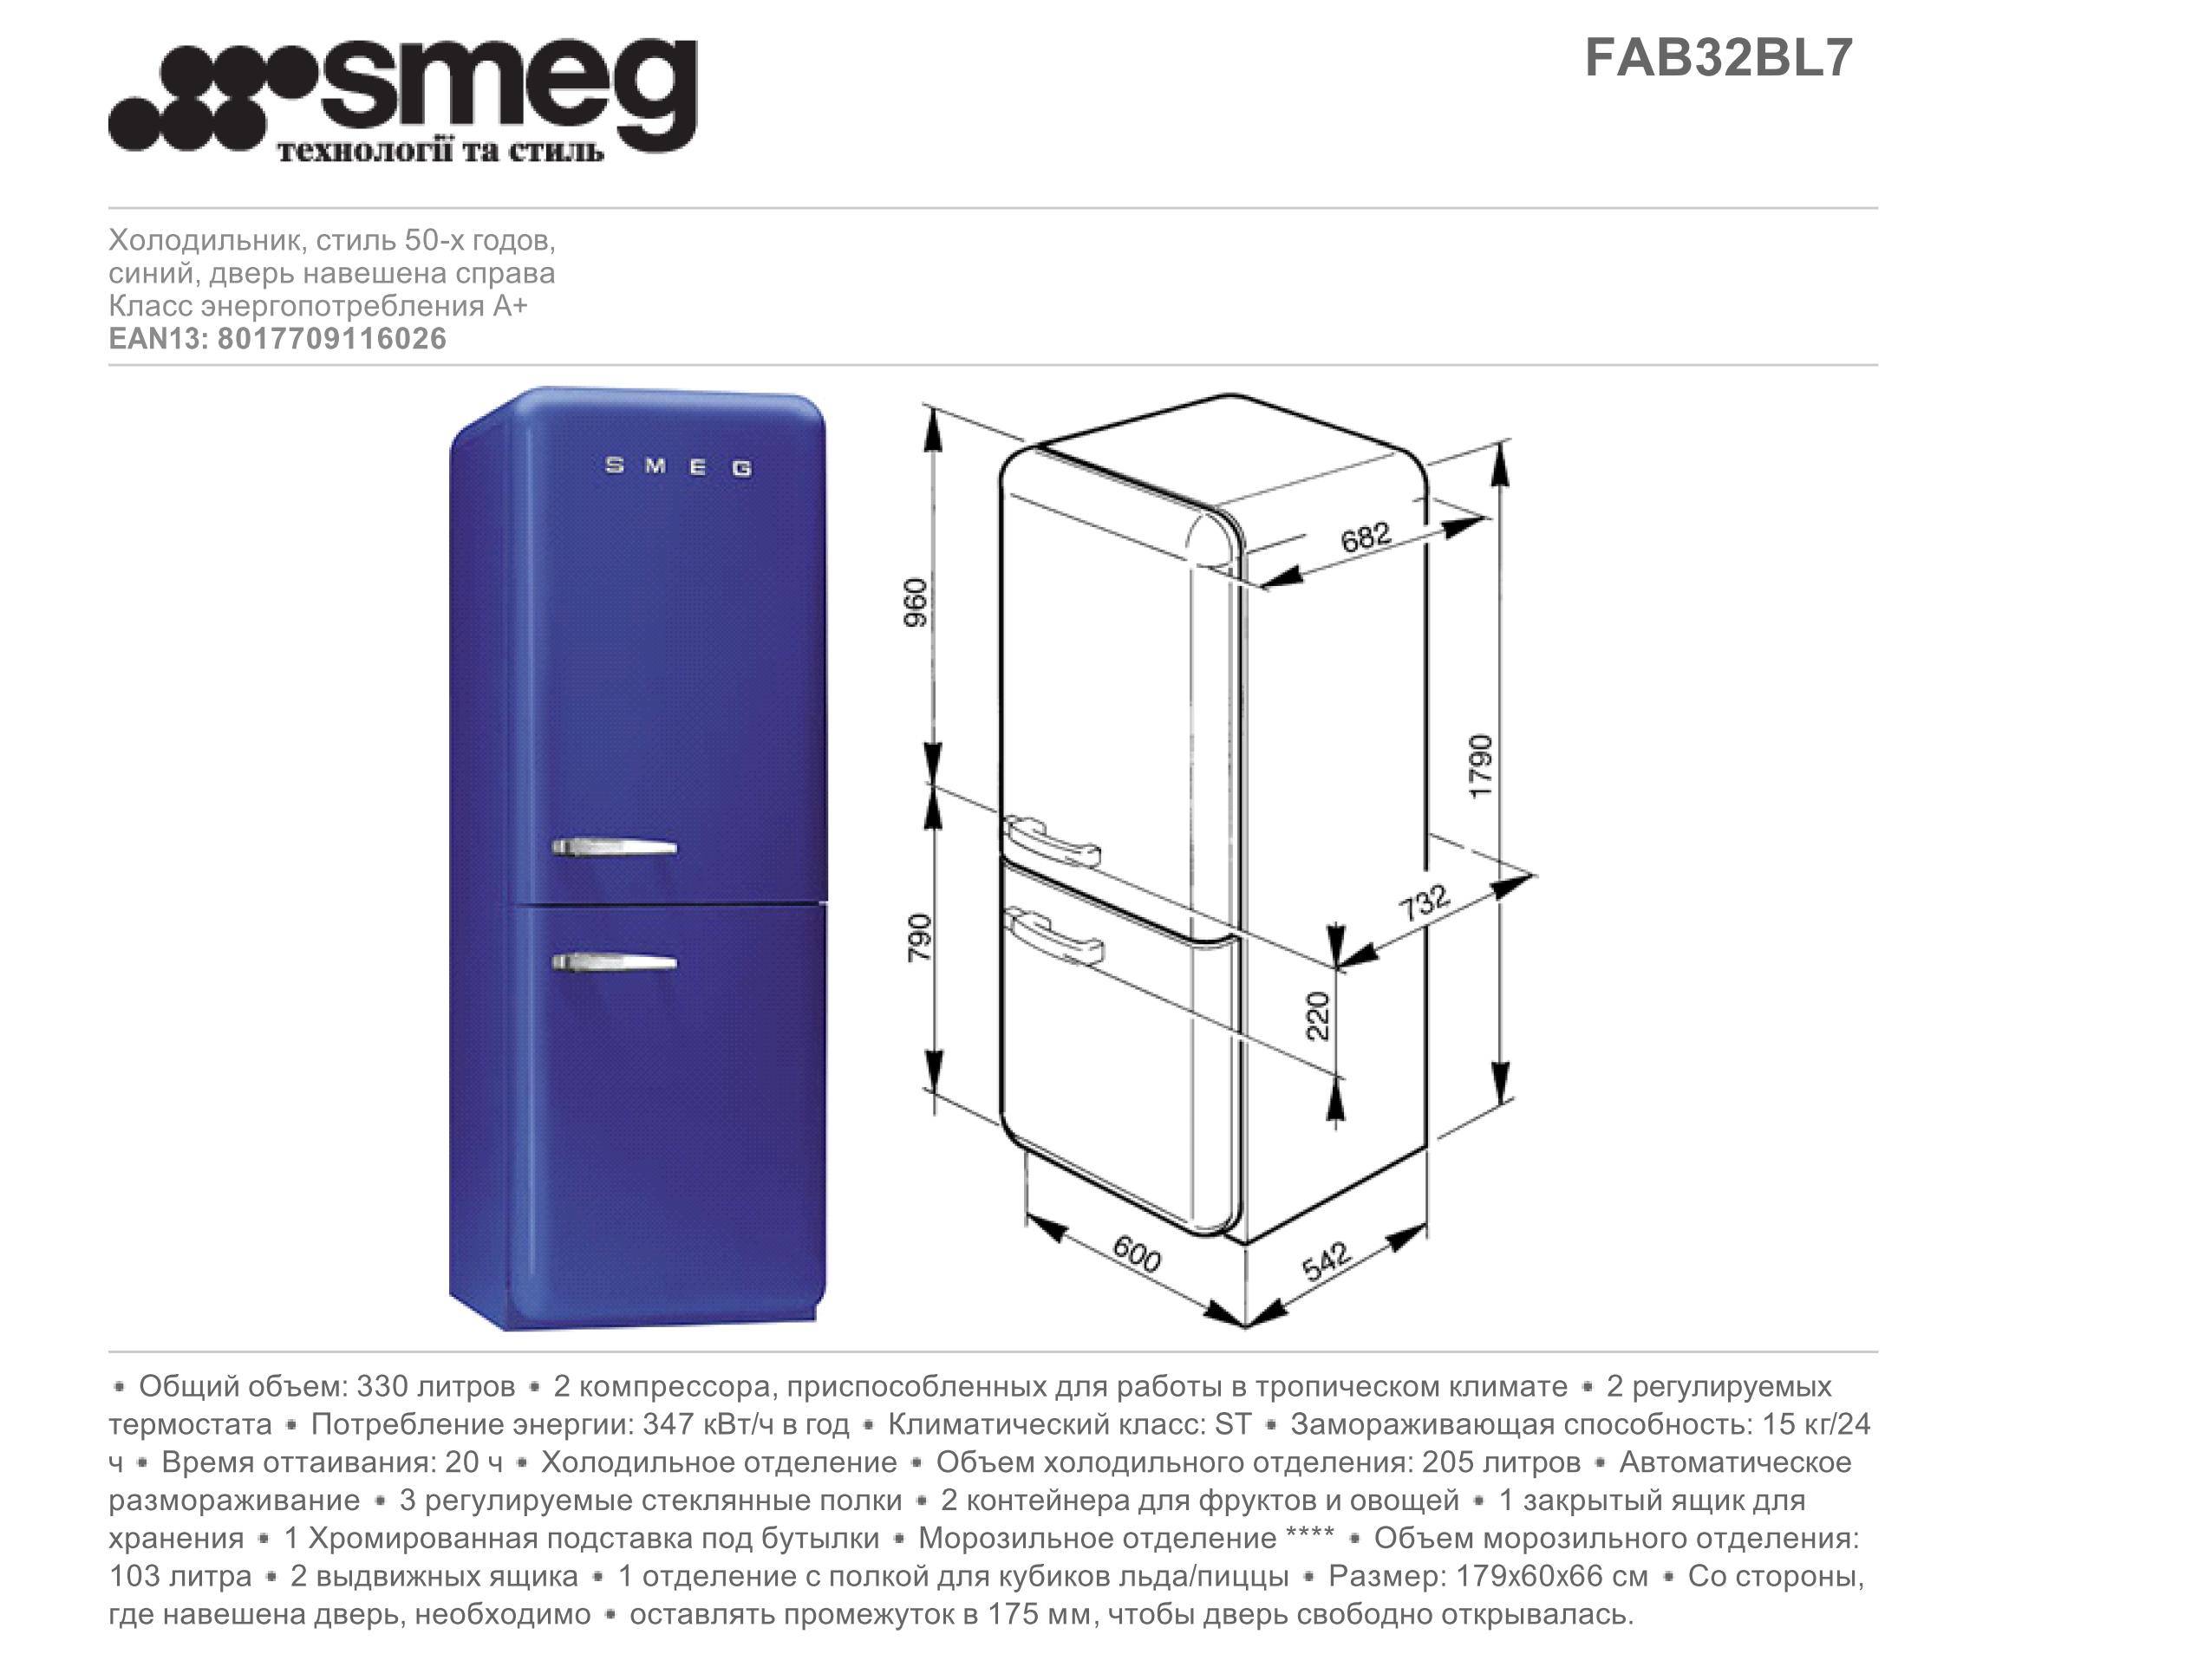 Холодильник Smeg fab32rxn1 вес. Smeg fab5lrd5 чертеж. Холодильник Smeg fab50lrd. Мини холодильник Смег чертеж. Холодильник размер 60